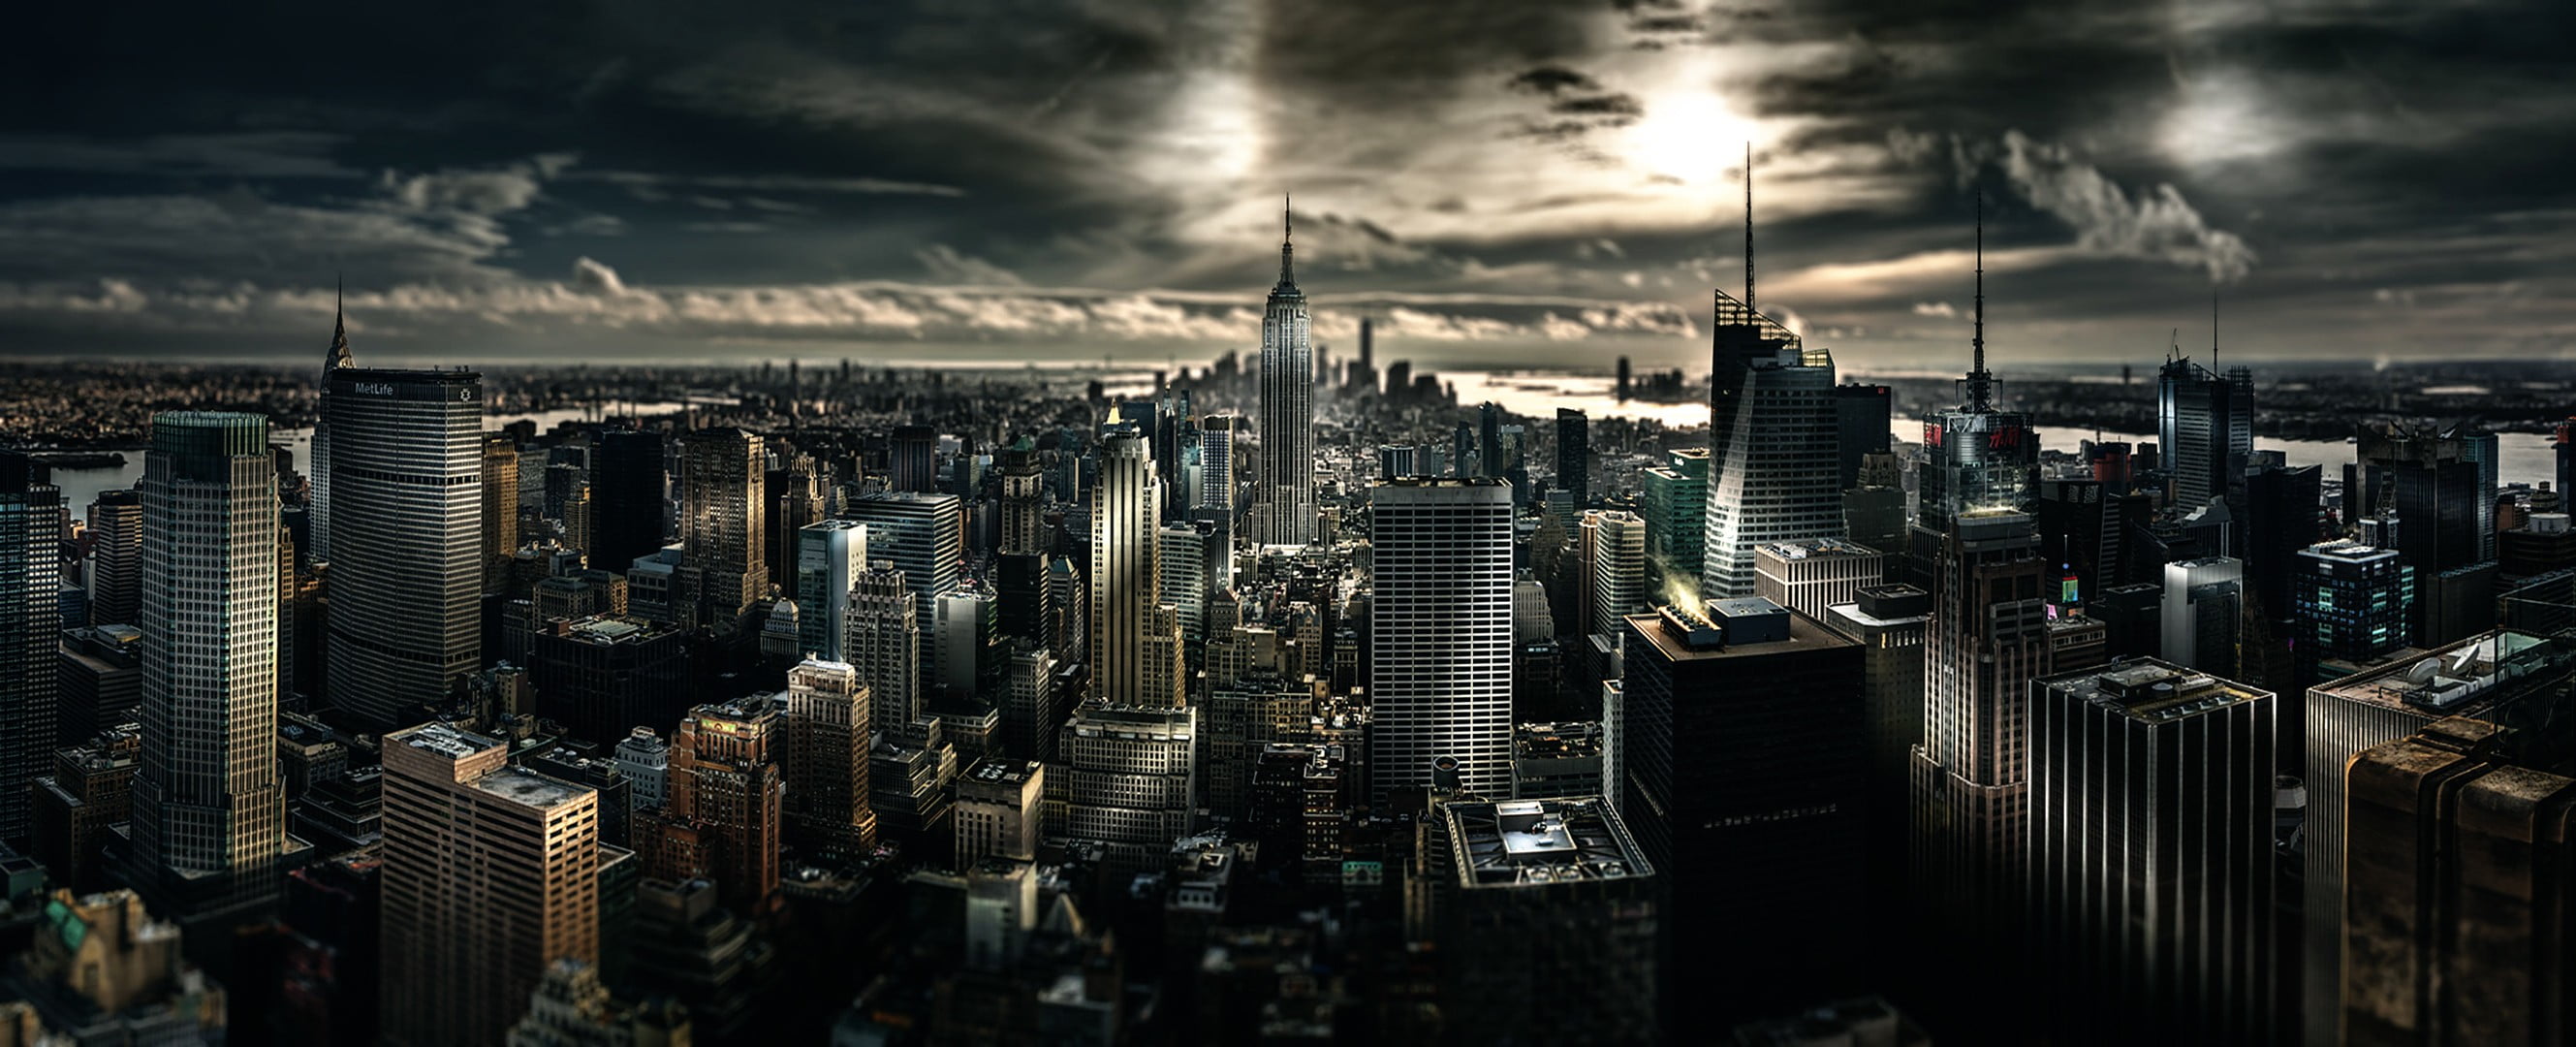 gray concrete buildings, landscape view of city buildings, Manhattan